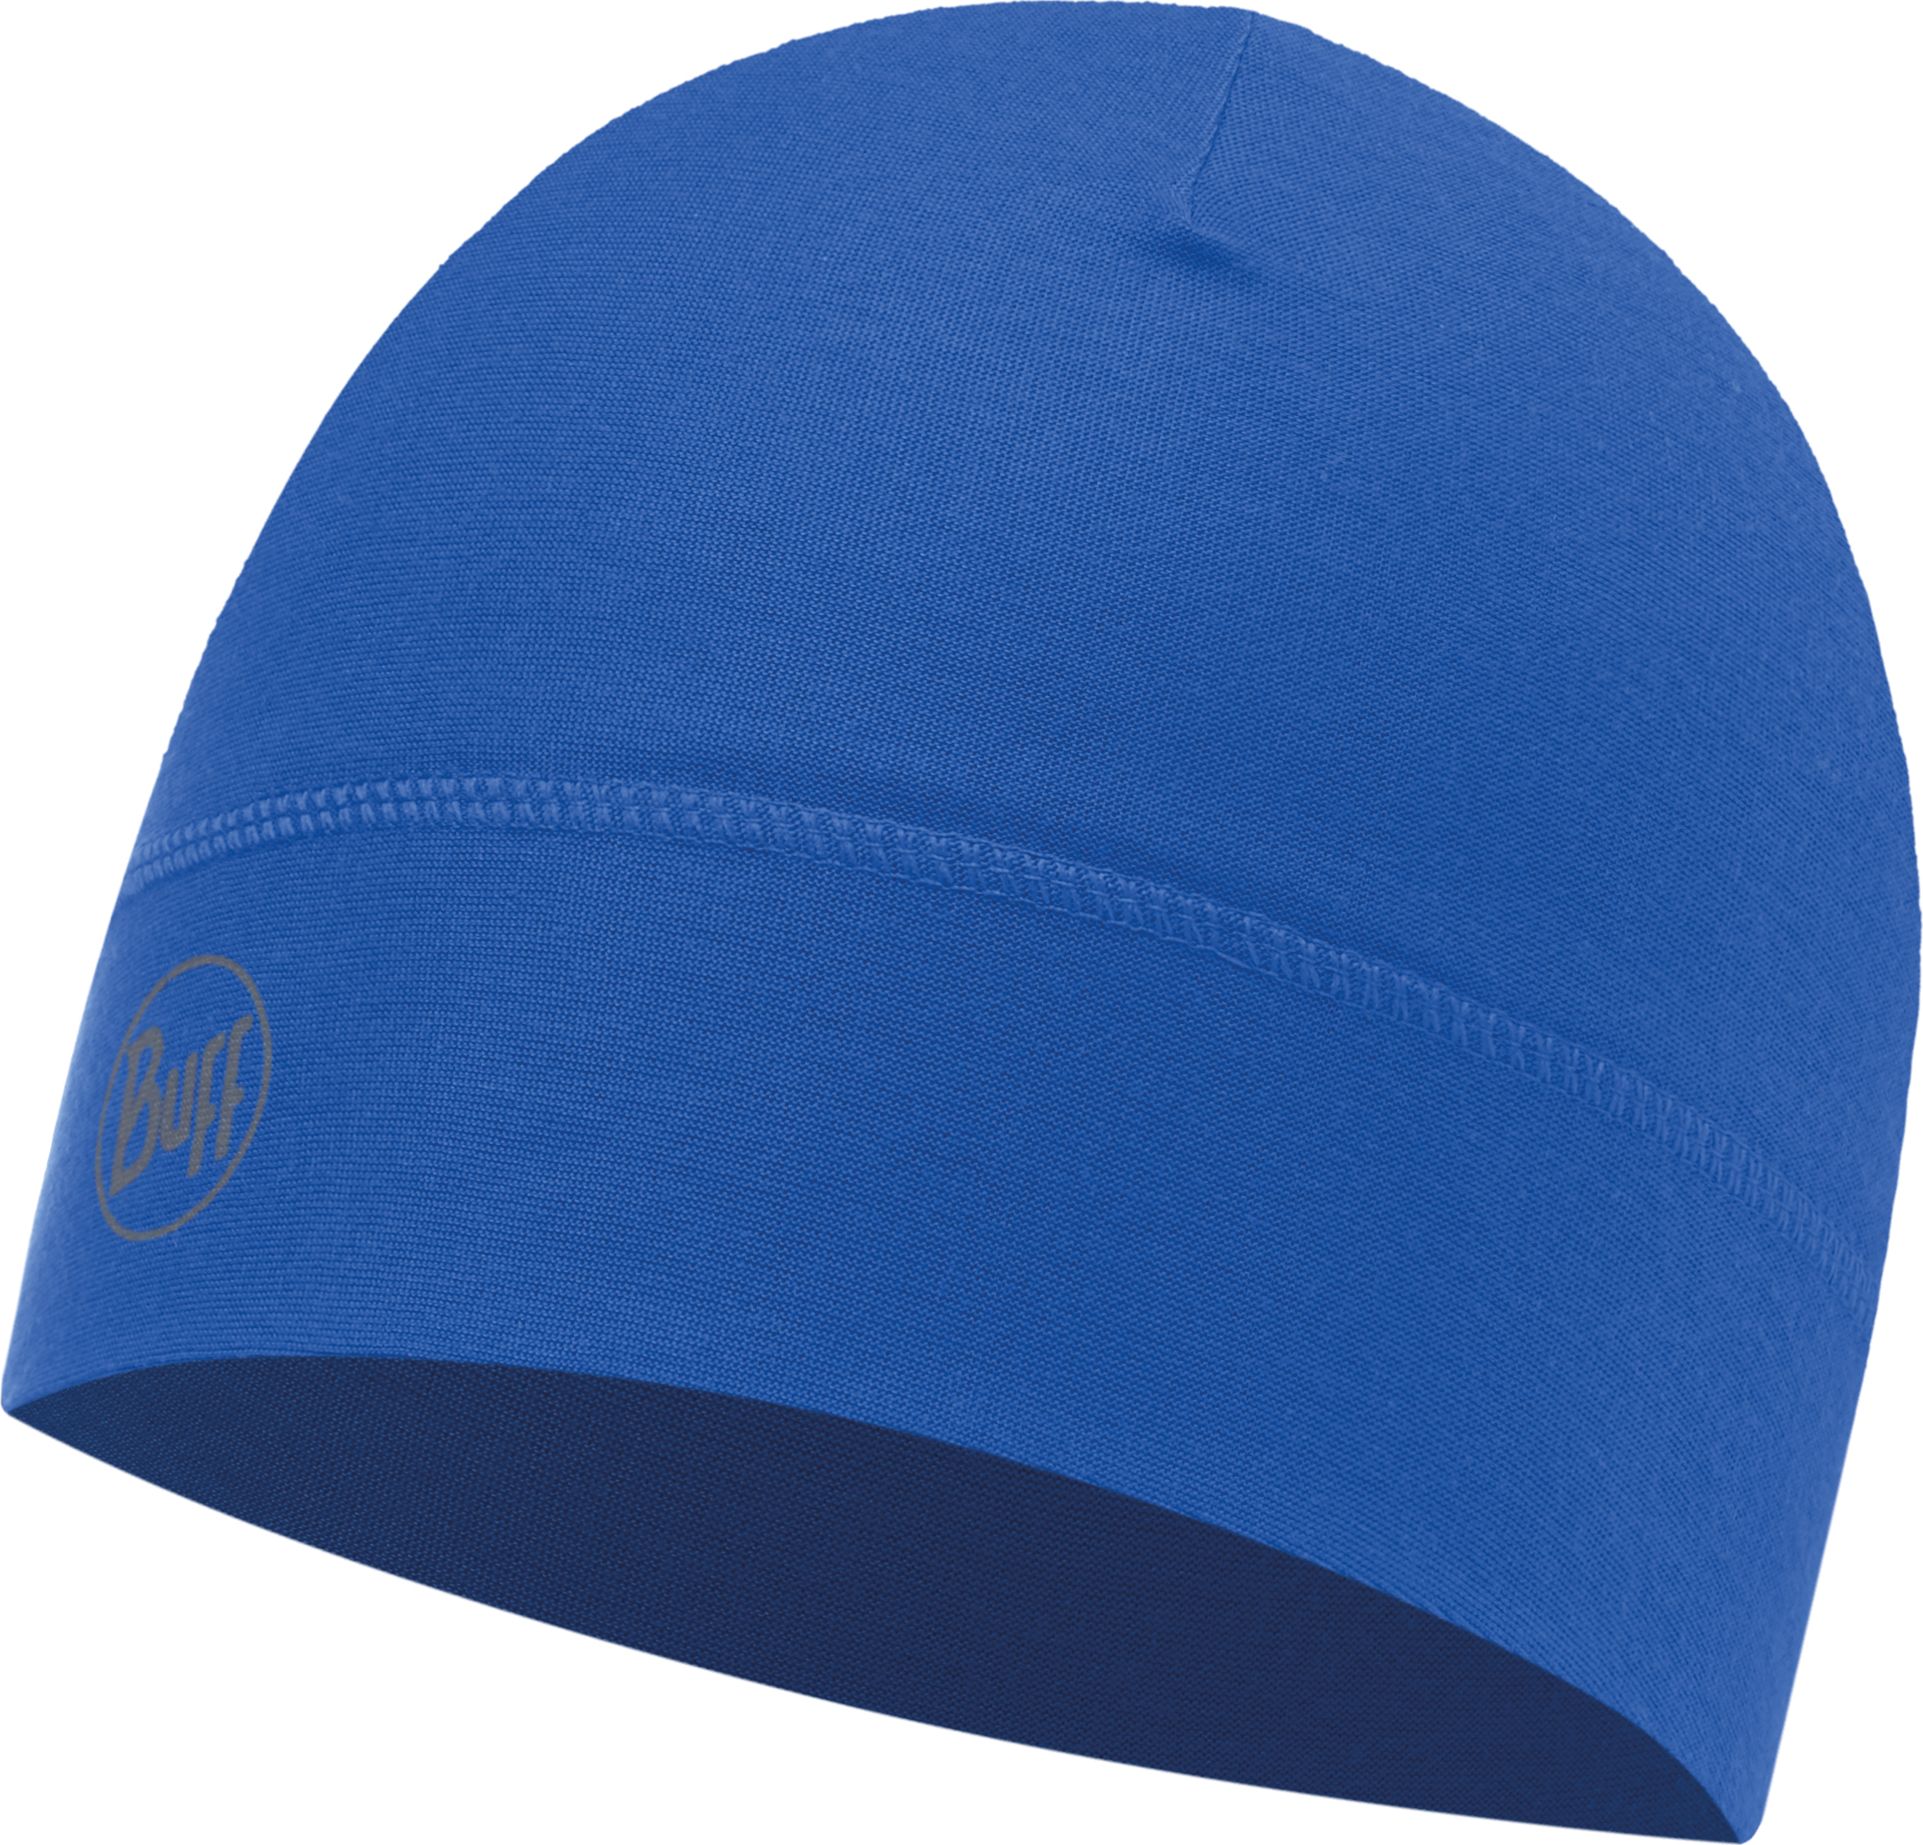 Шапка Buff Microfiber 1 Layer Hat Solid Cape Blue, цвет: синий. 113246.715.10.00. Размер универсальный